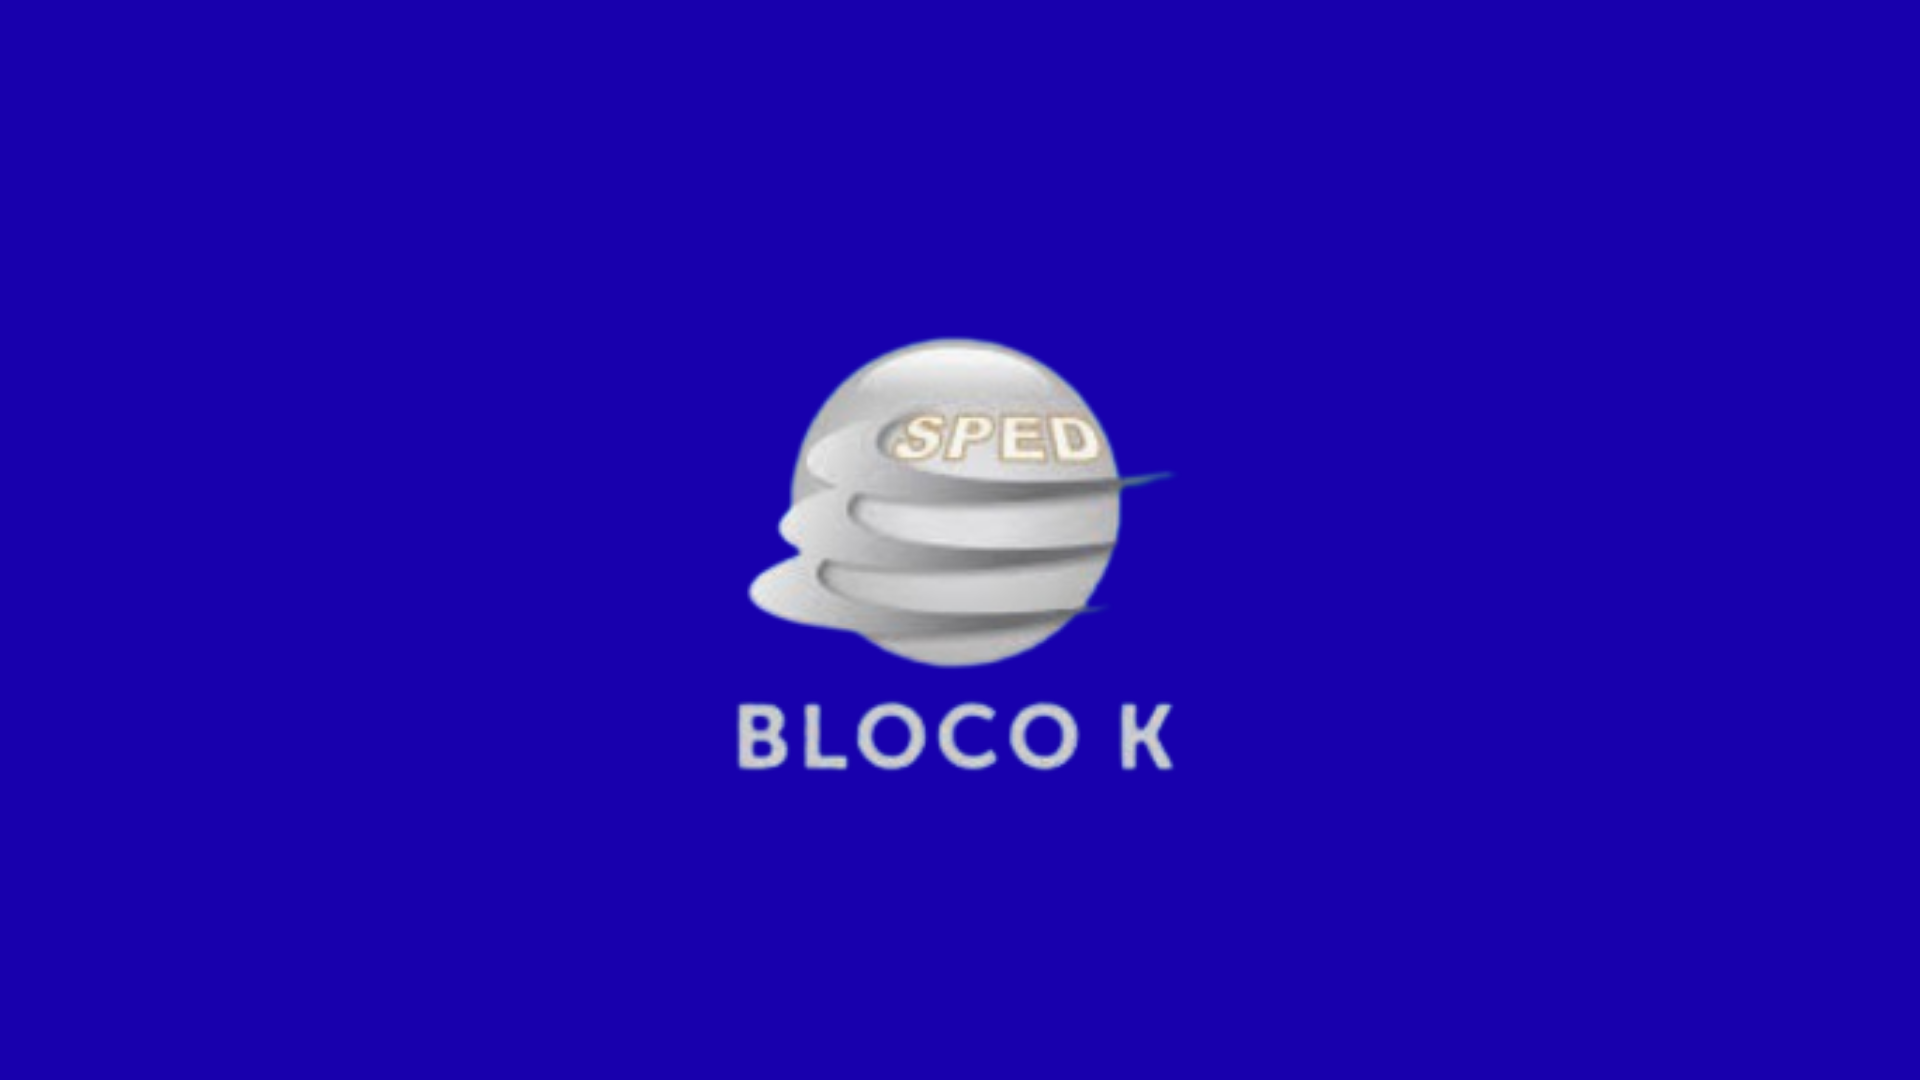 BLOCO K do SPED FISCAL – (Versão Simplificada)